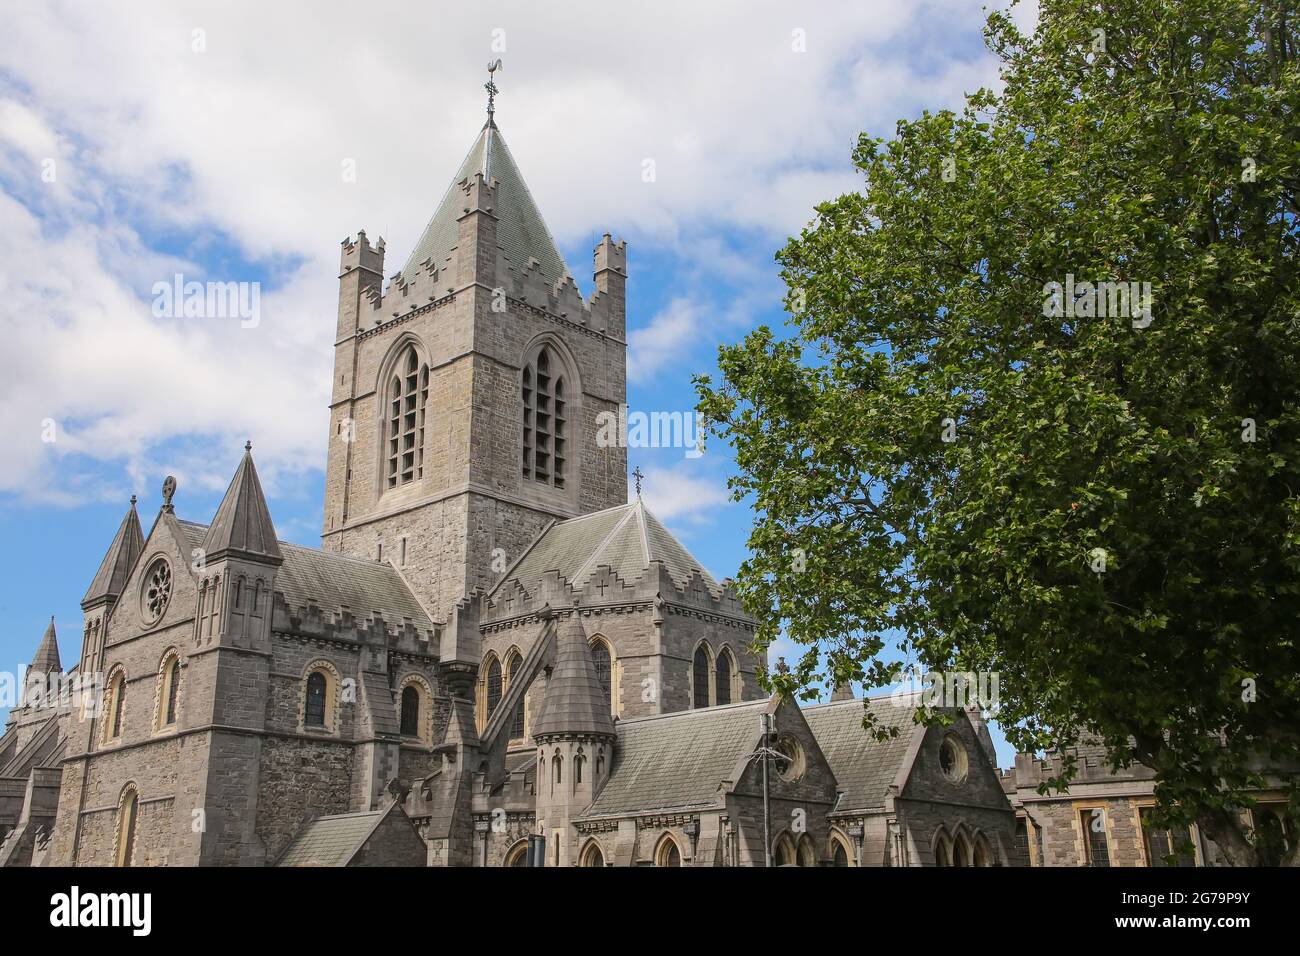 La Catedral de la Iglesia de Cristo, más formalmente la Catedral de la Santísima Trinidad, es la catedral en el centro de la ciudad de Dublín, Irlanda. Foto de stock